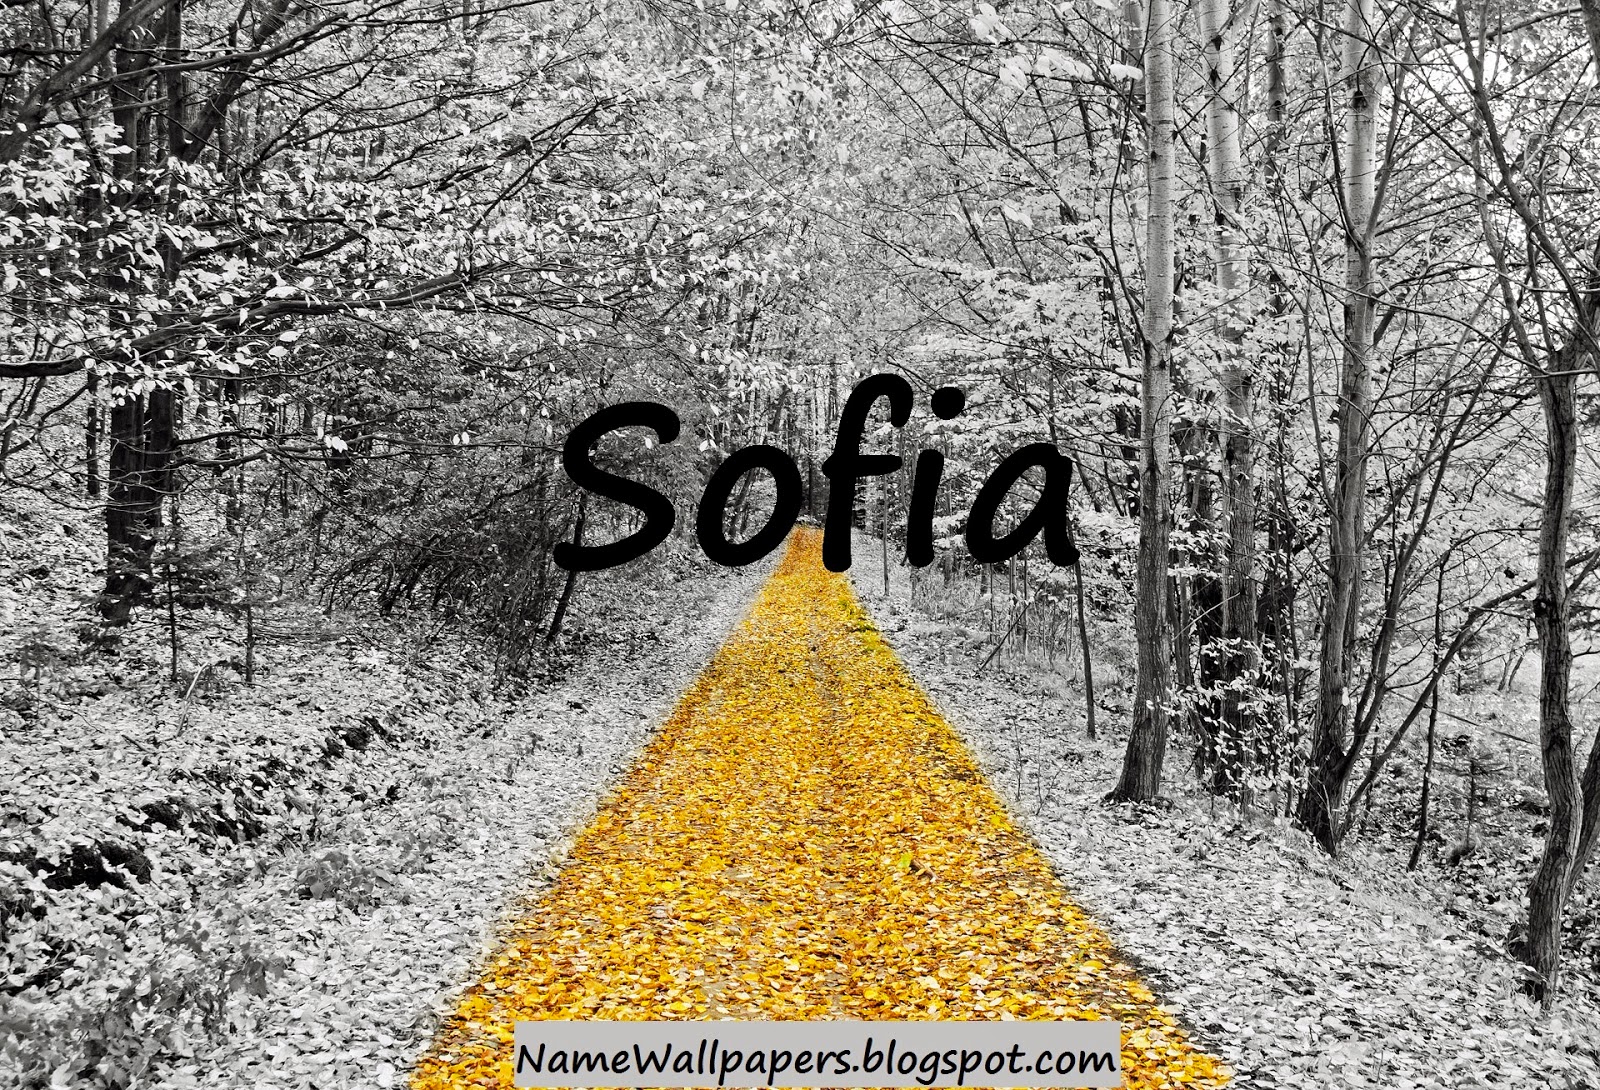 소피아 이름 벽지,자연 경관,자연,나무,검정색과 흰색,노랑